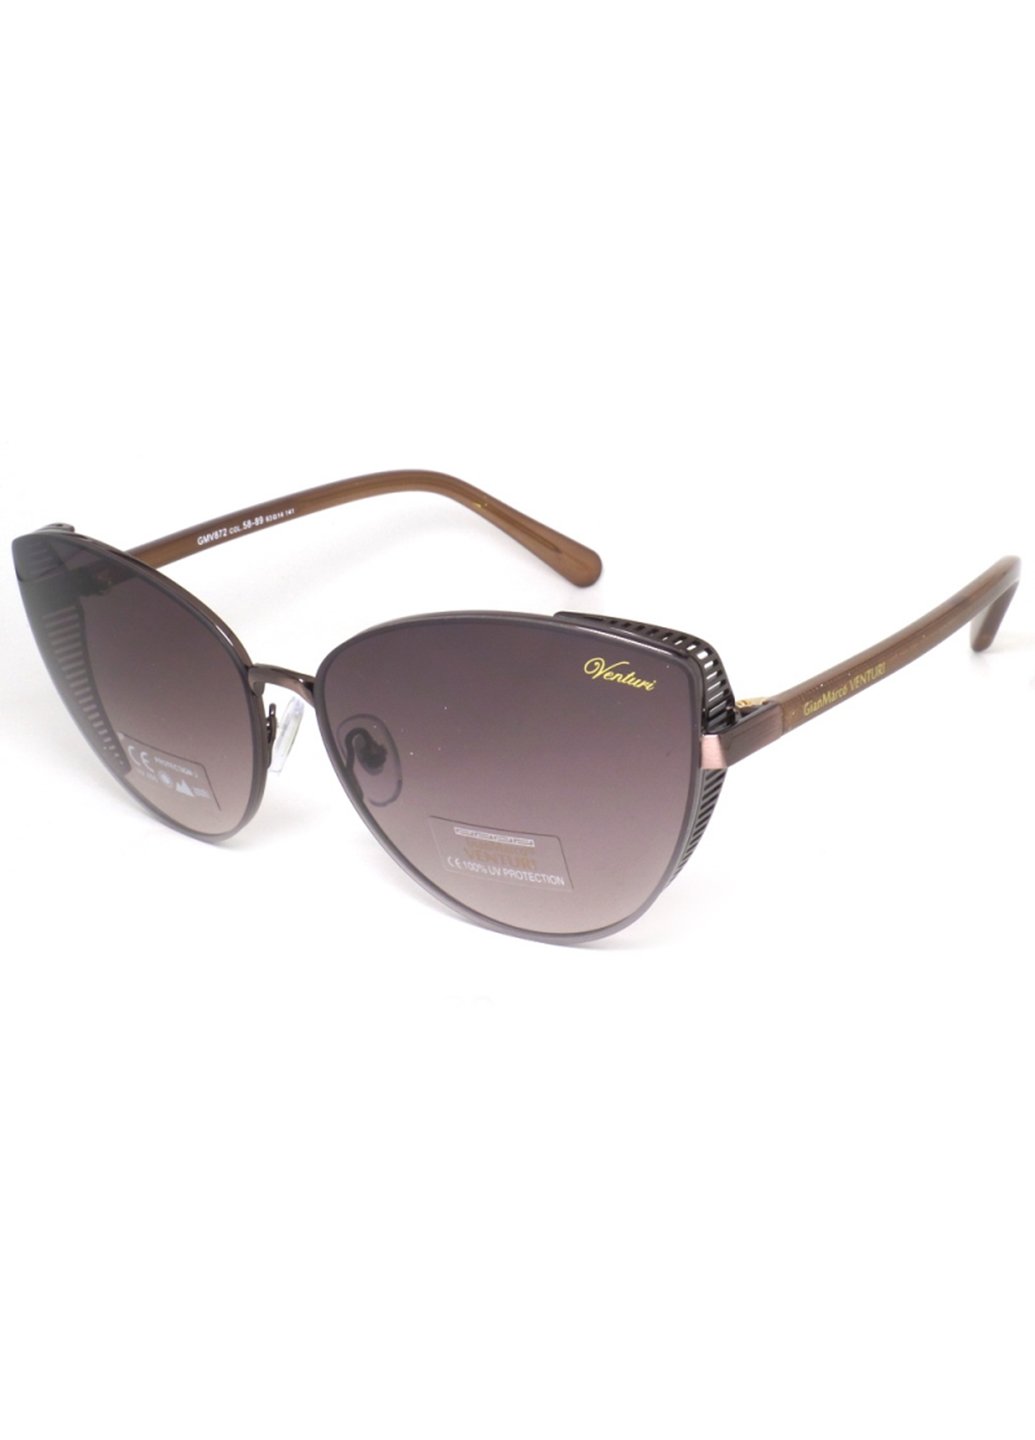 Купить Женские солнцезащитные очки Gian Marco VENTURI GMV872 130004 - Коричневый в интернет-магазине